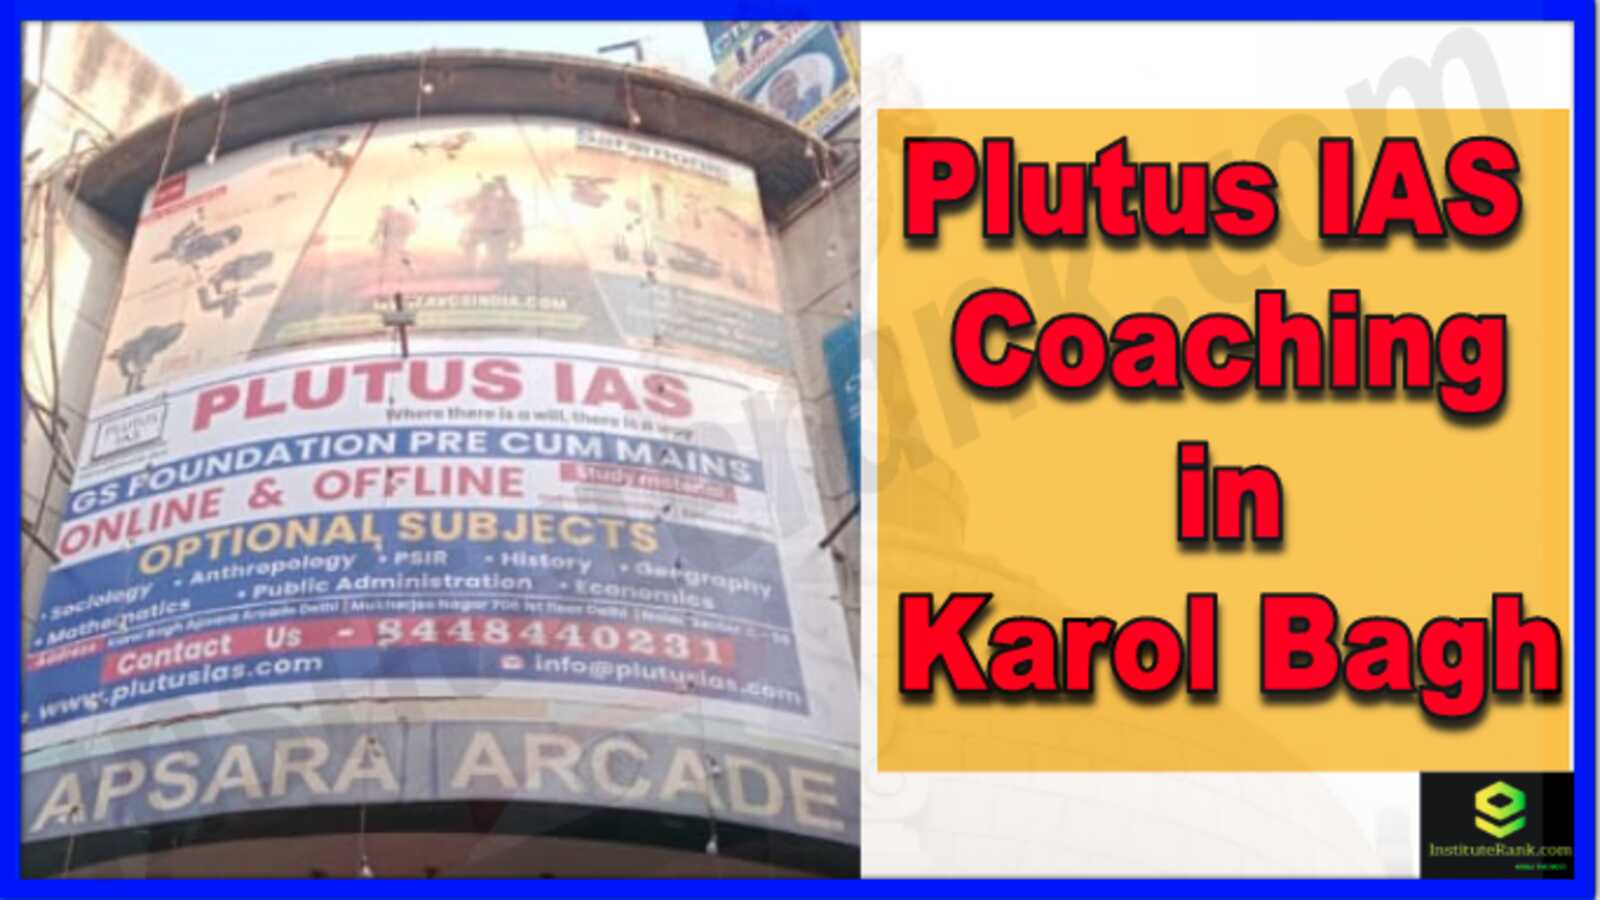 Plutus IAS Coaching in Karol Bagh